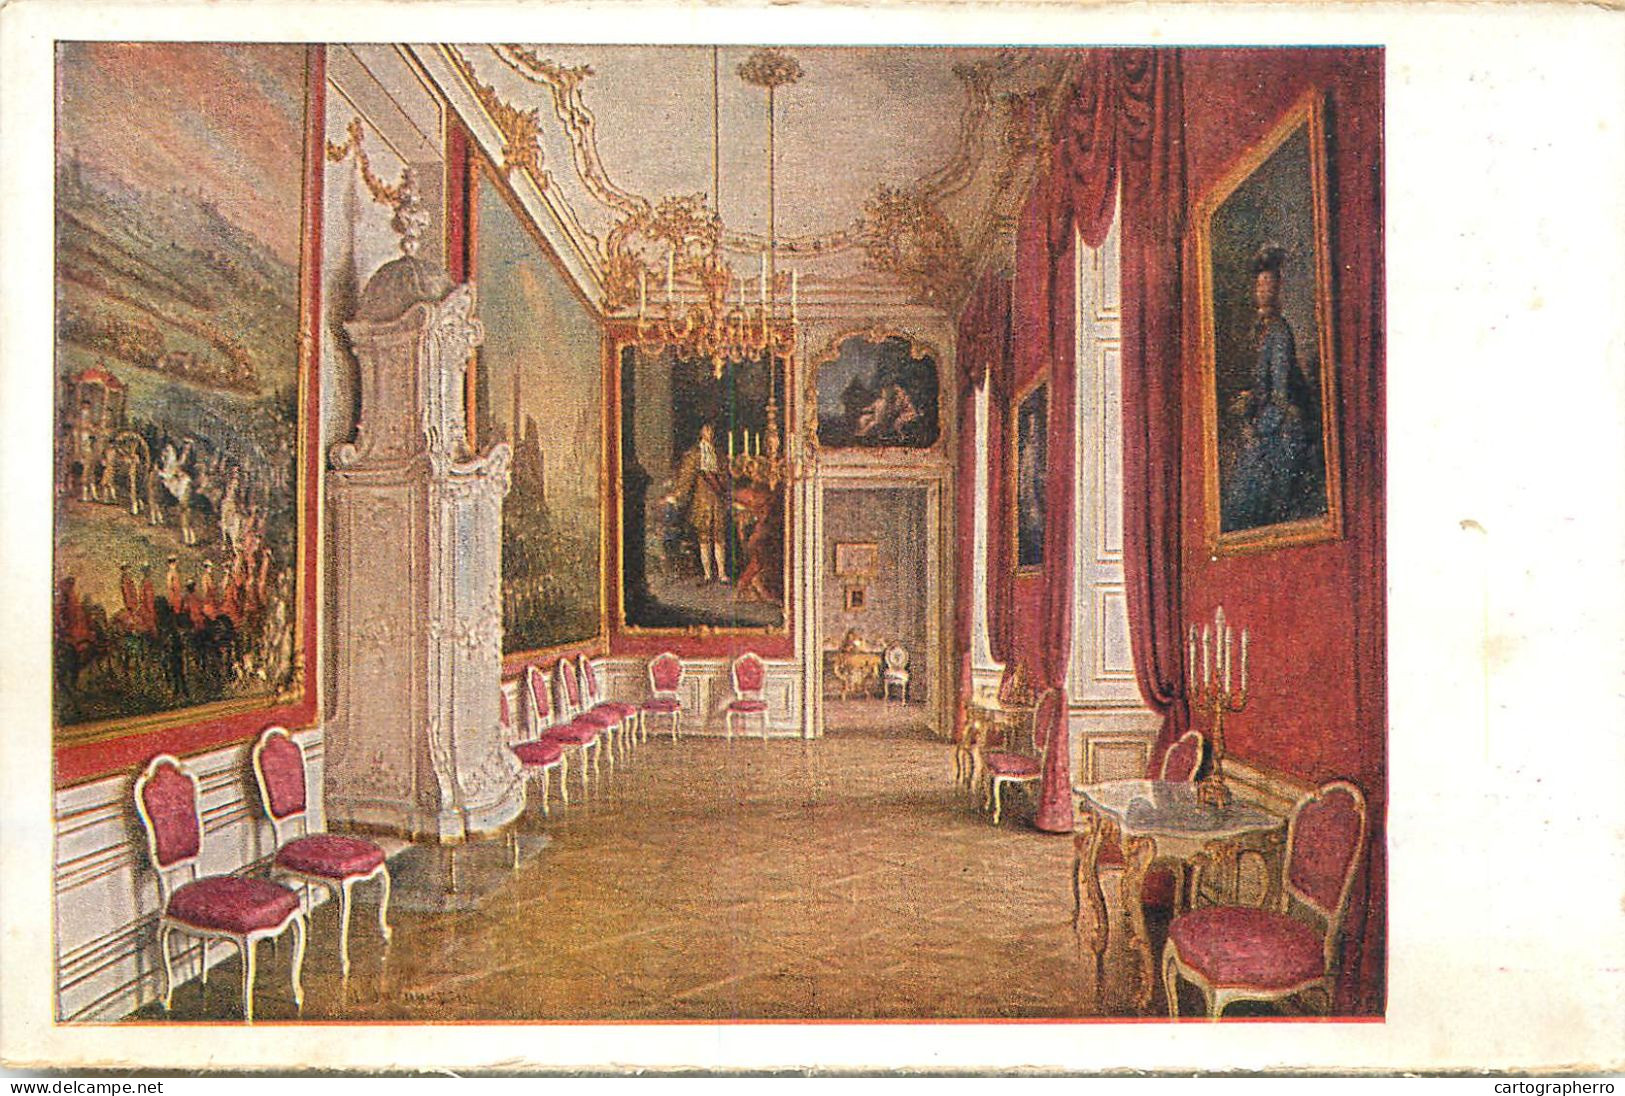 Postcard Austria Wien Schönbrunn Palace Guest Room - Château De Schönbrunn